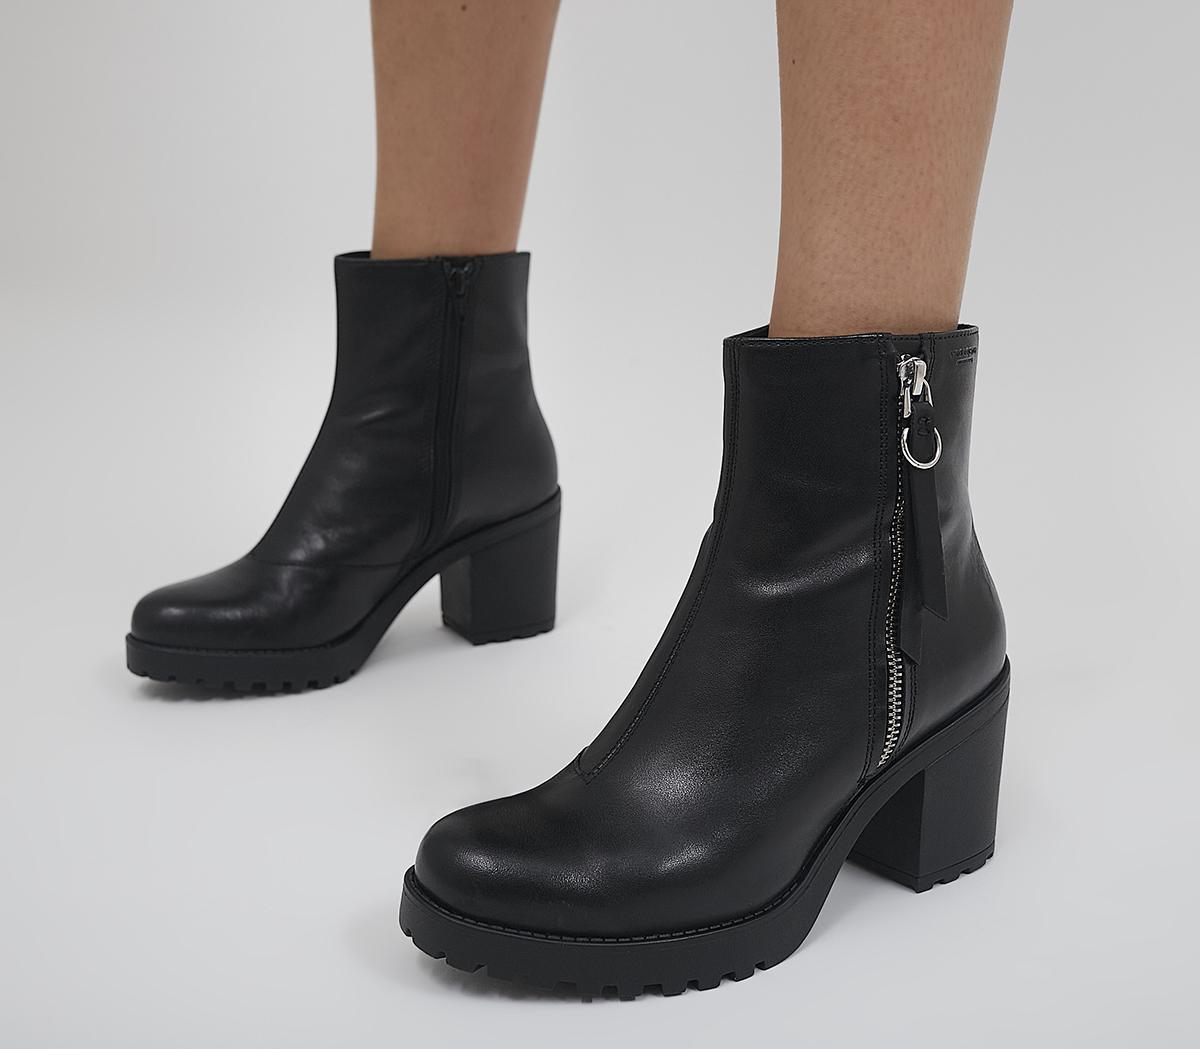 Vagabond Shoemakers Grace Block Heel Boots Black - Ankle